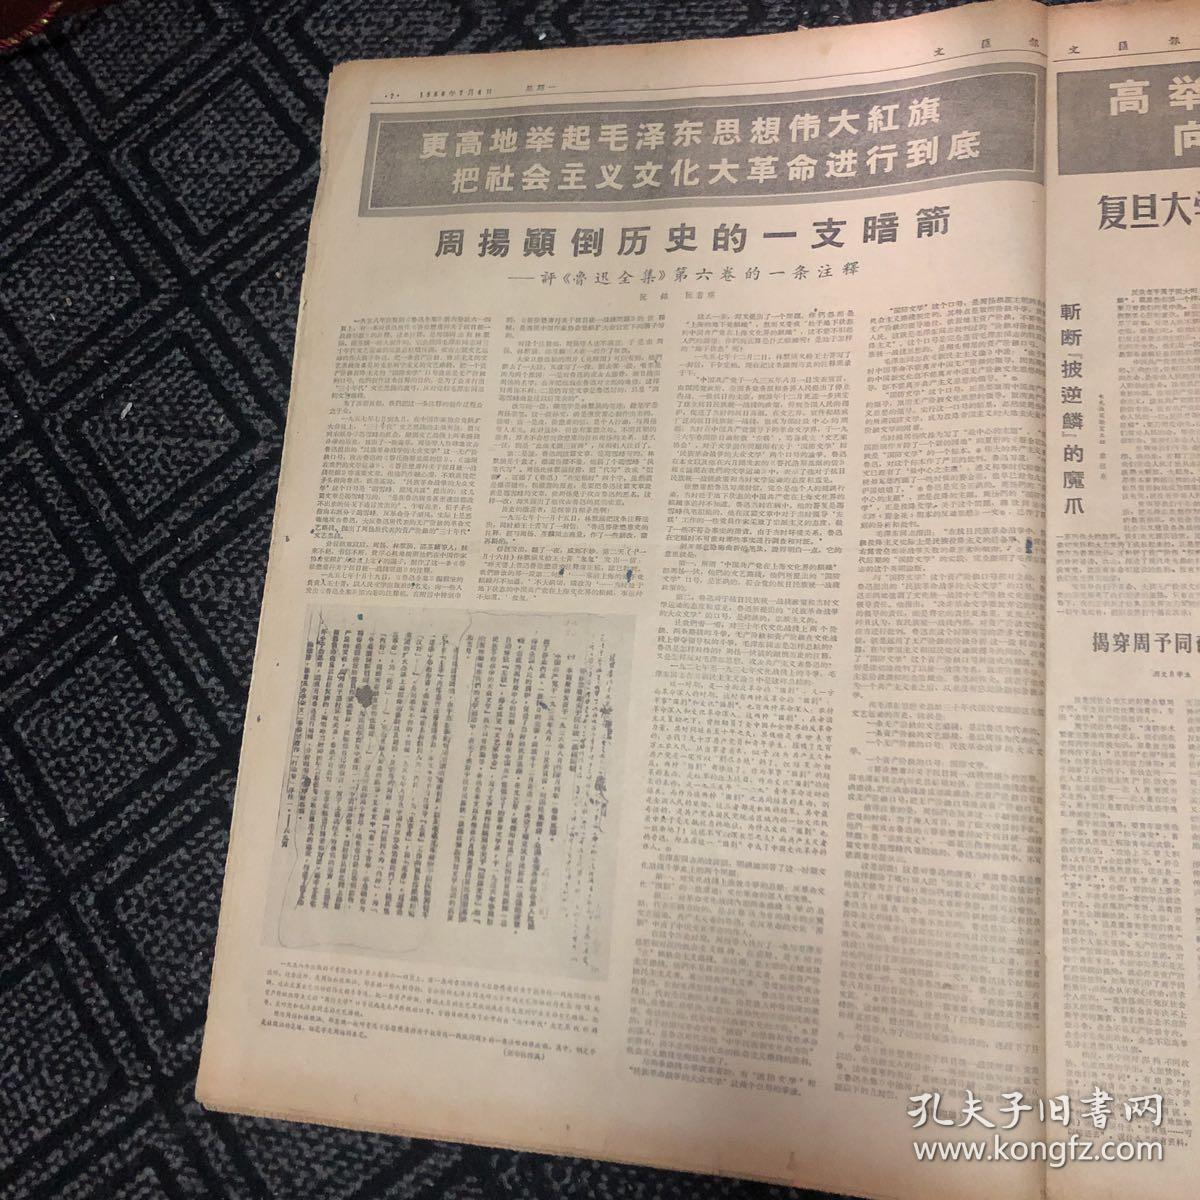 生日报……老报纸、旧报纸：文汇报1966.7.4 （1～4版)《中国援越抗美更加不受任何约束和限制》《许多代表主张三届亚非作家会议在京举行》